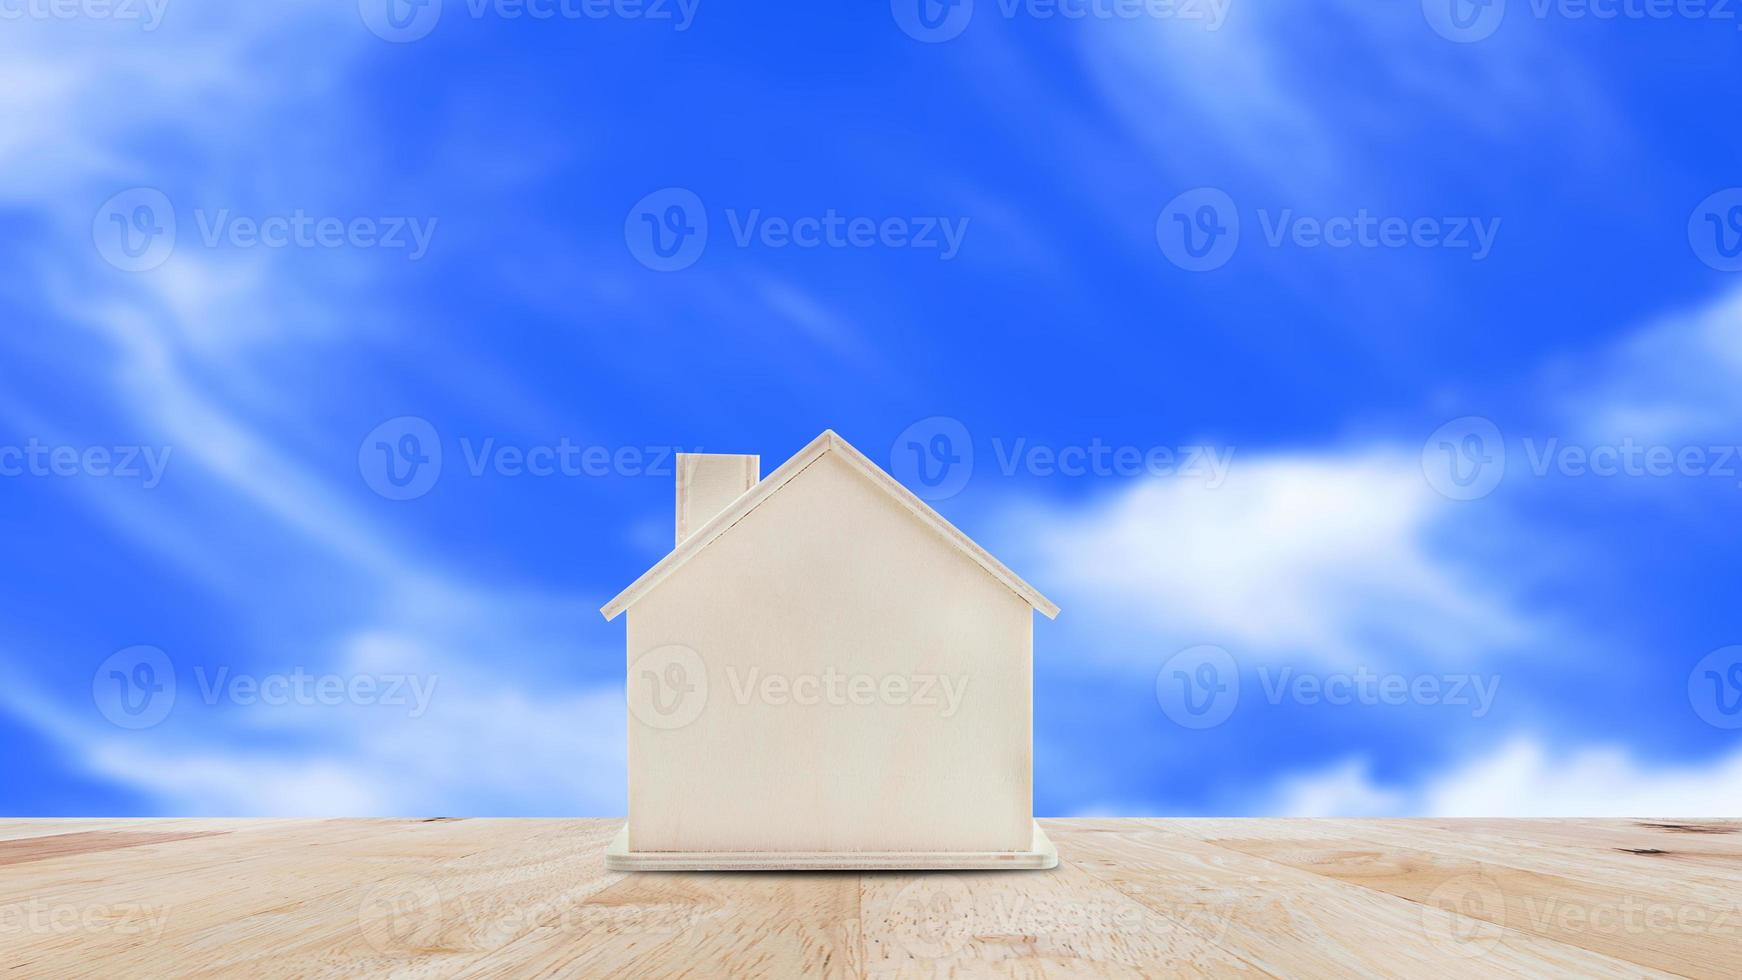 pequeno casa modelo em de madeira mesa com azul céu plano de fundo.família vida e o negócio real Estado conceito. foto